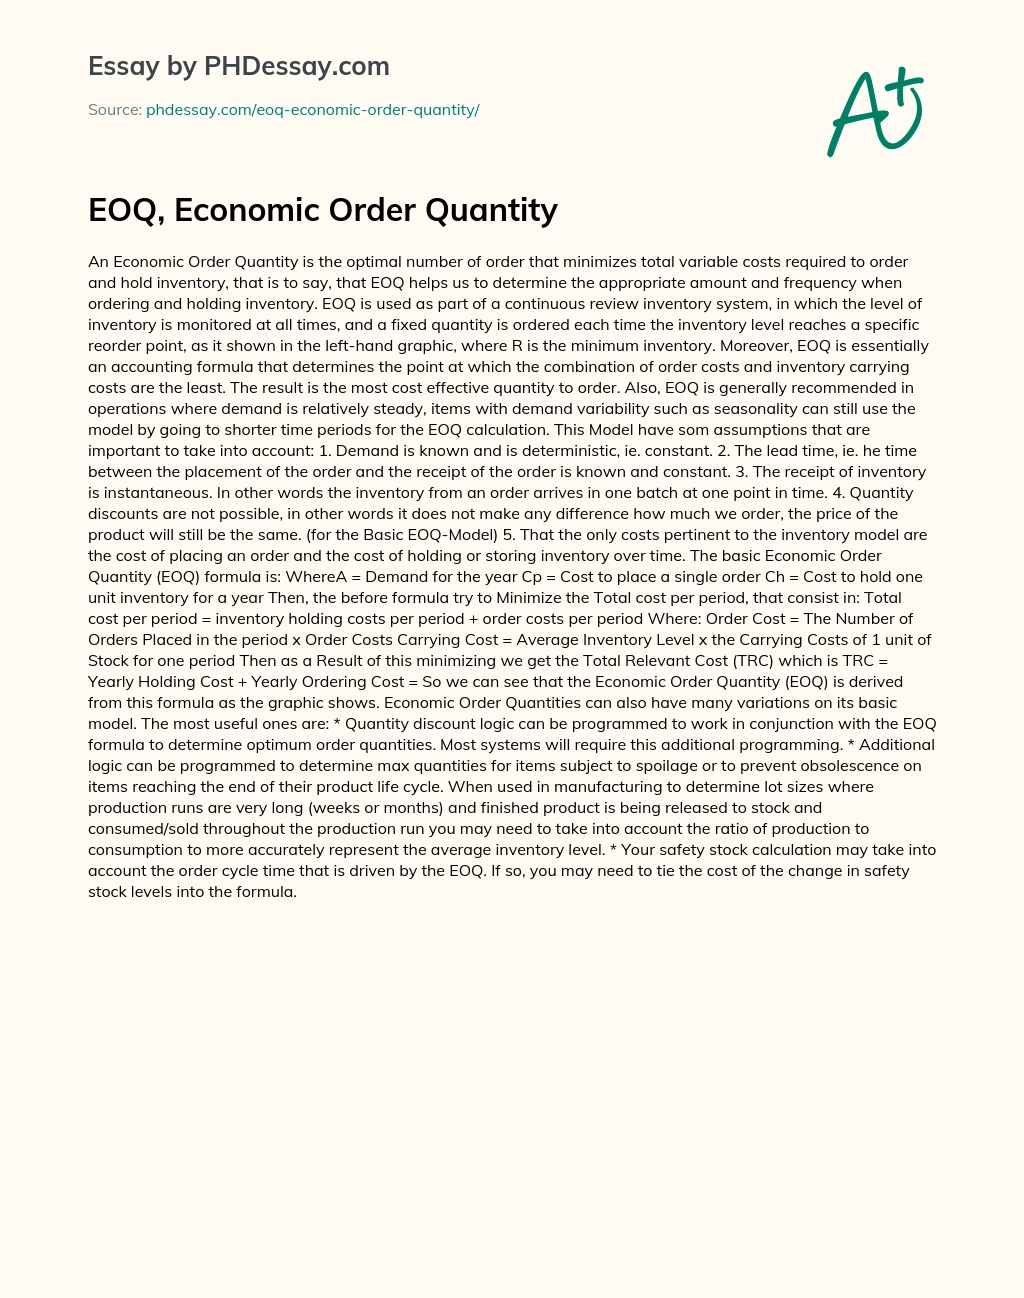 EOQ, Economic Order Quantity essay